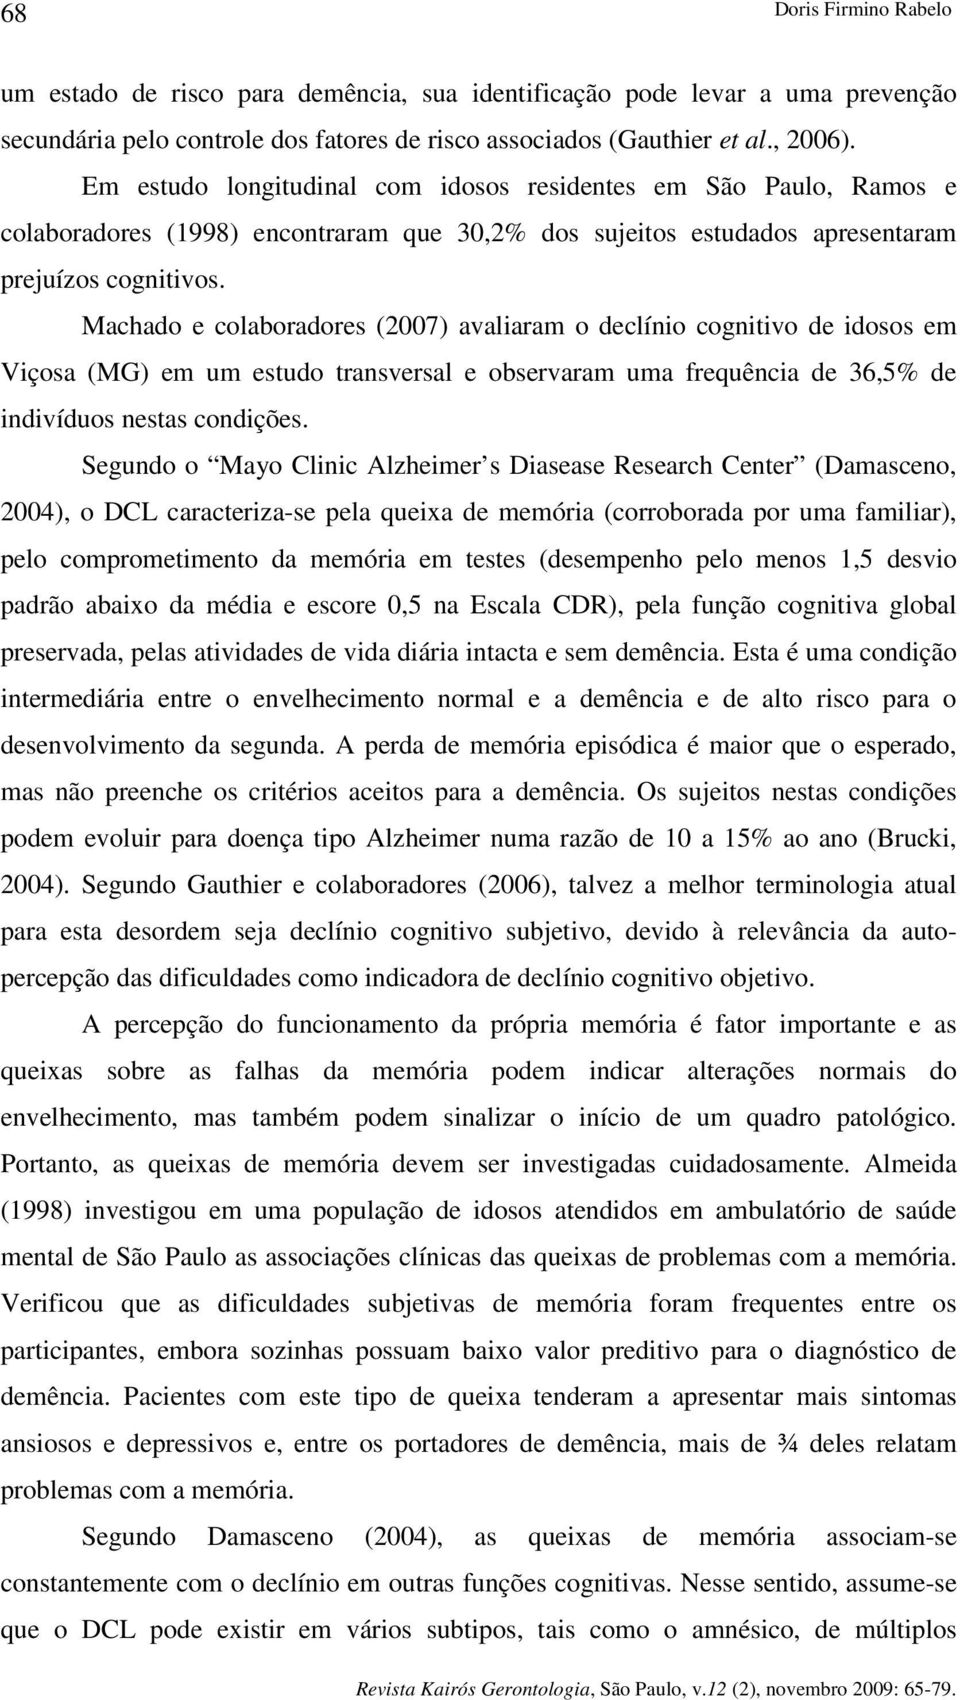 Machado e colaboradores (2007) avaliaram o declínio cognitivo de idosos em Viçosa (MG) em um estudo transversal e observaram uma frequência de 36,5% de indivíduos nestas condições.